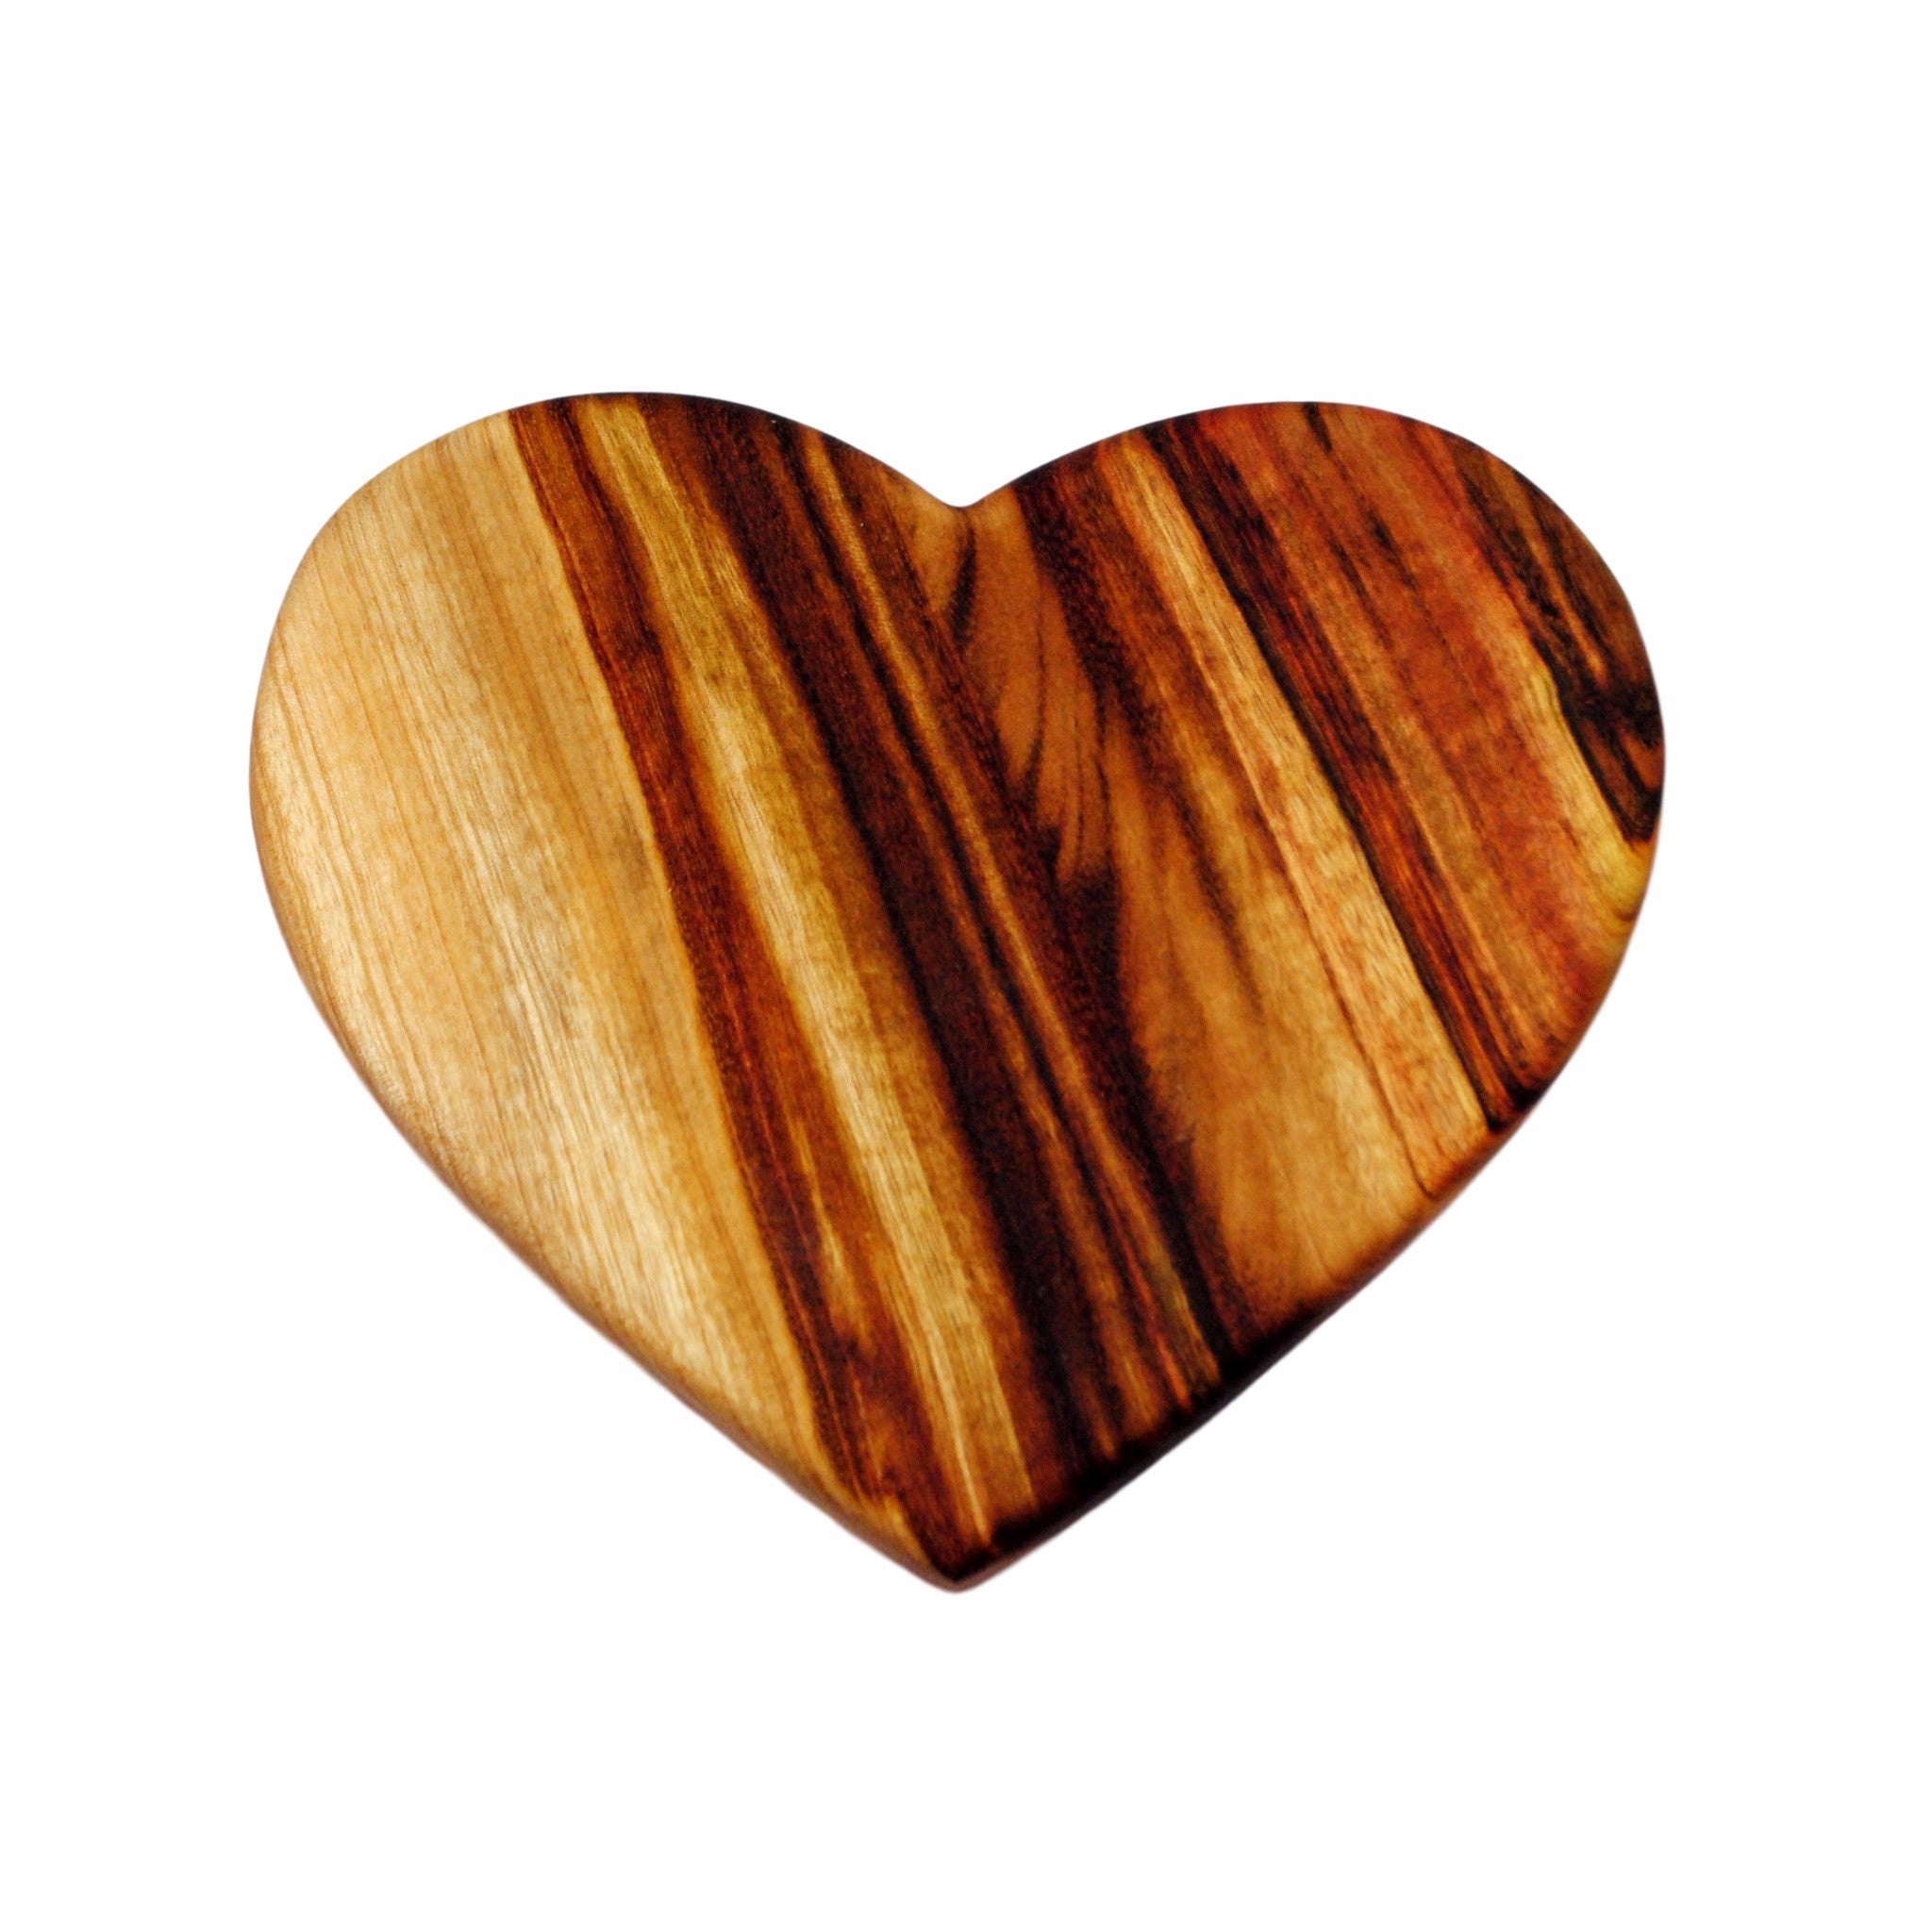 Heart Chopping Board